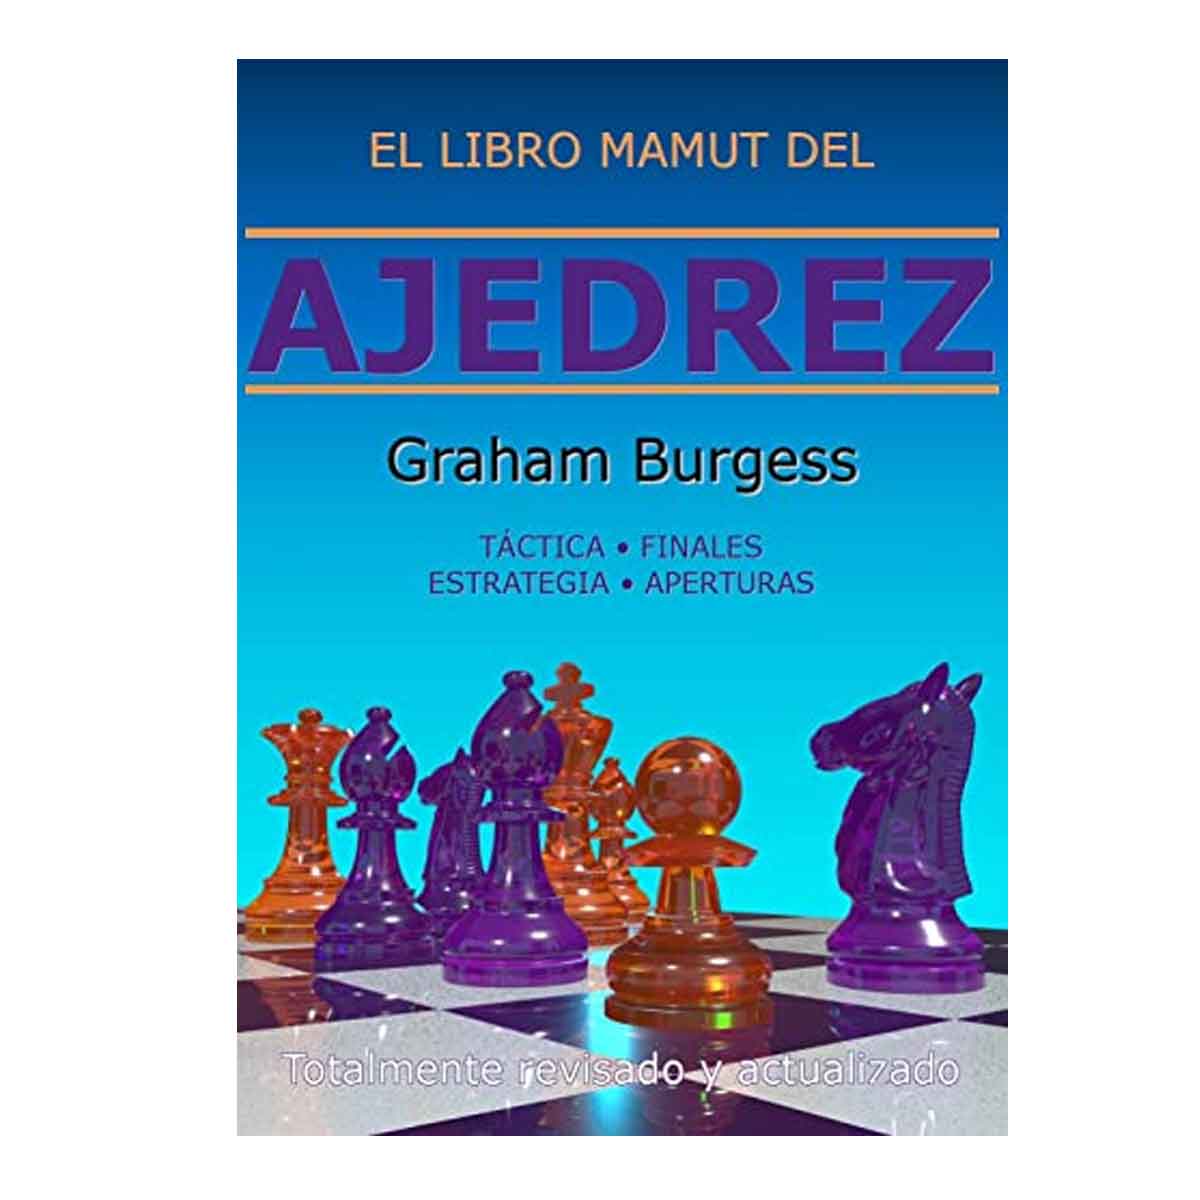 El libro mamut del ajedrez